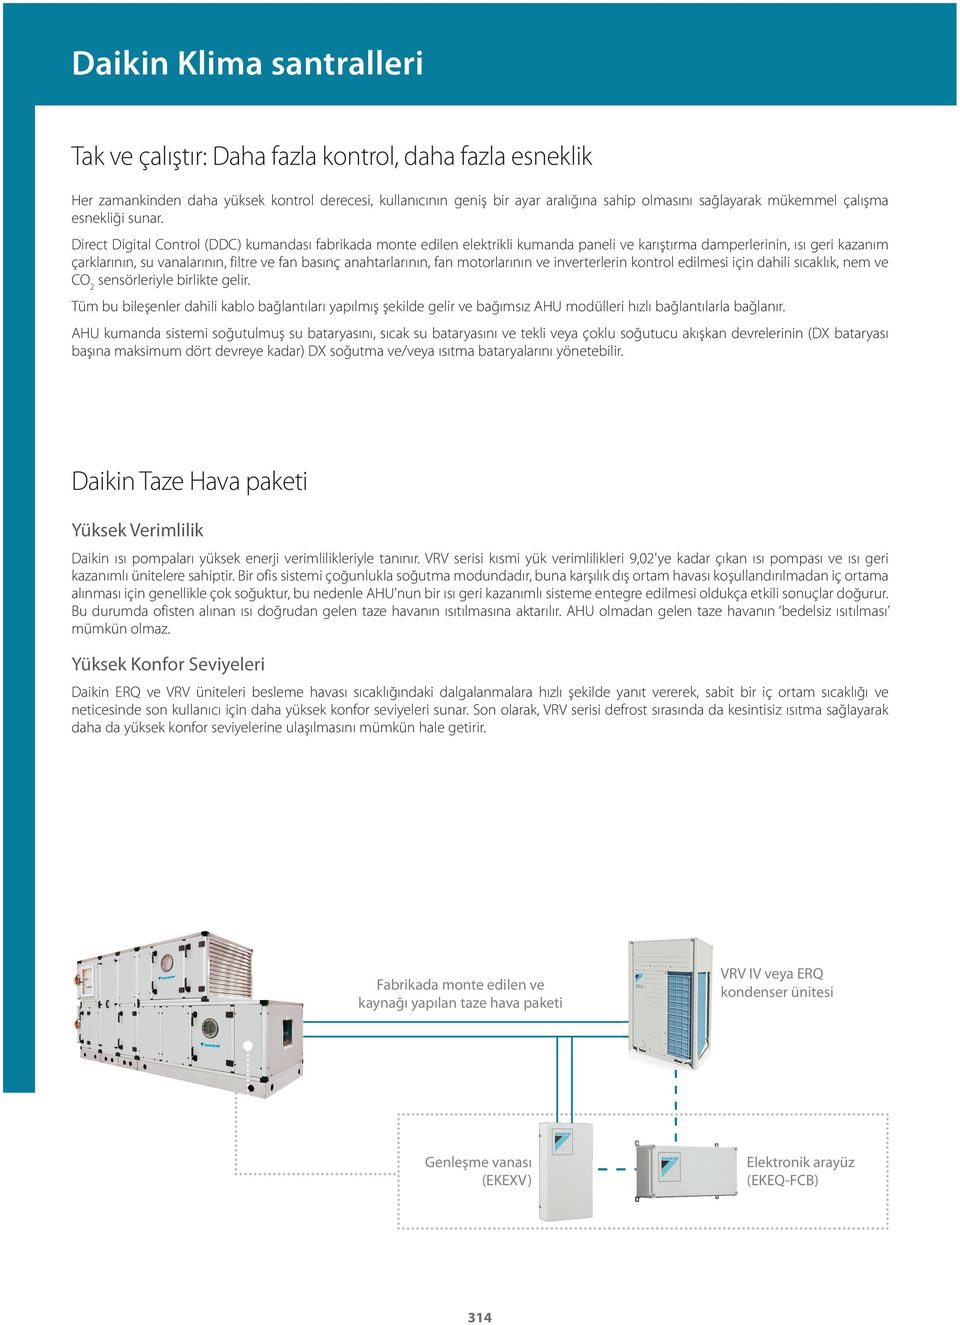 Direct Digital Control (DDC) kumandası fabrikada monte edilen elektrikli kumanda paneli ve karıştırma damperlerinin, ısı geri kazanım çarklarının, su vanalarının, filtre ve fan basınç anahtarlarının,